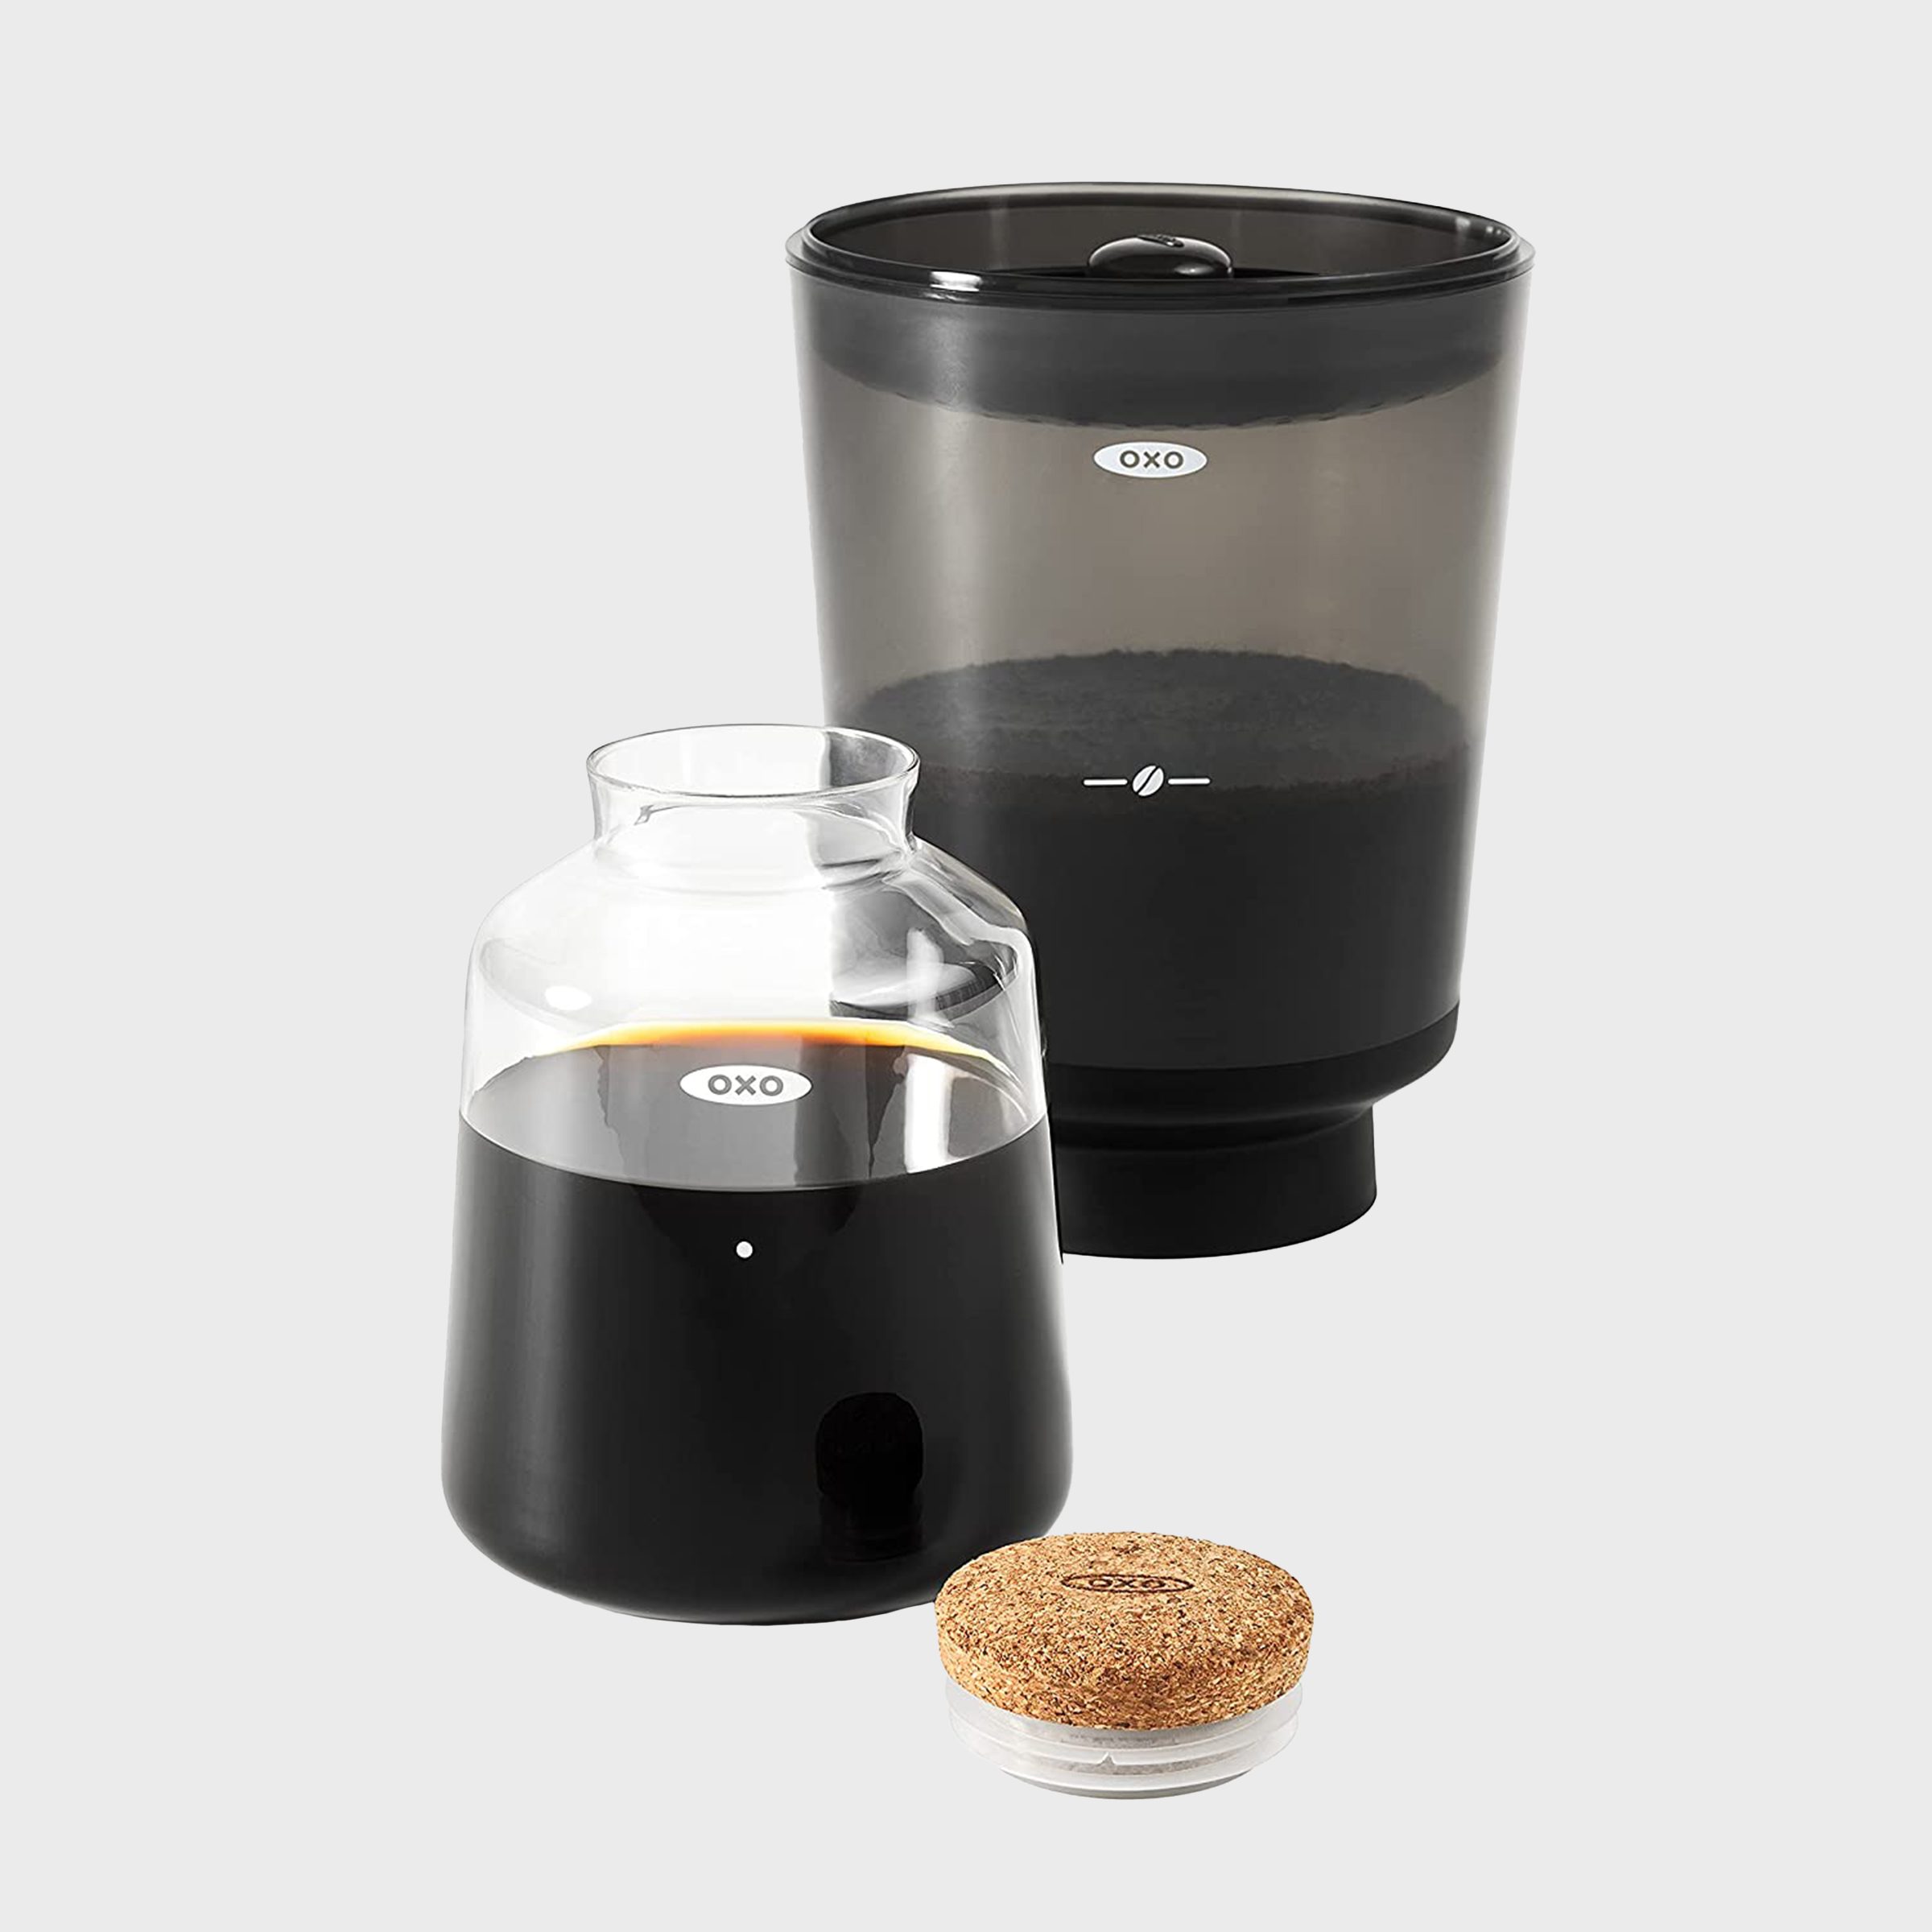 Oranlife Non-electric Coffee Percolators, Cold Brew Coffee Maker